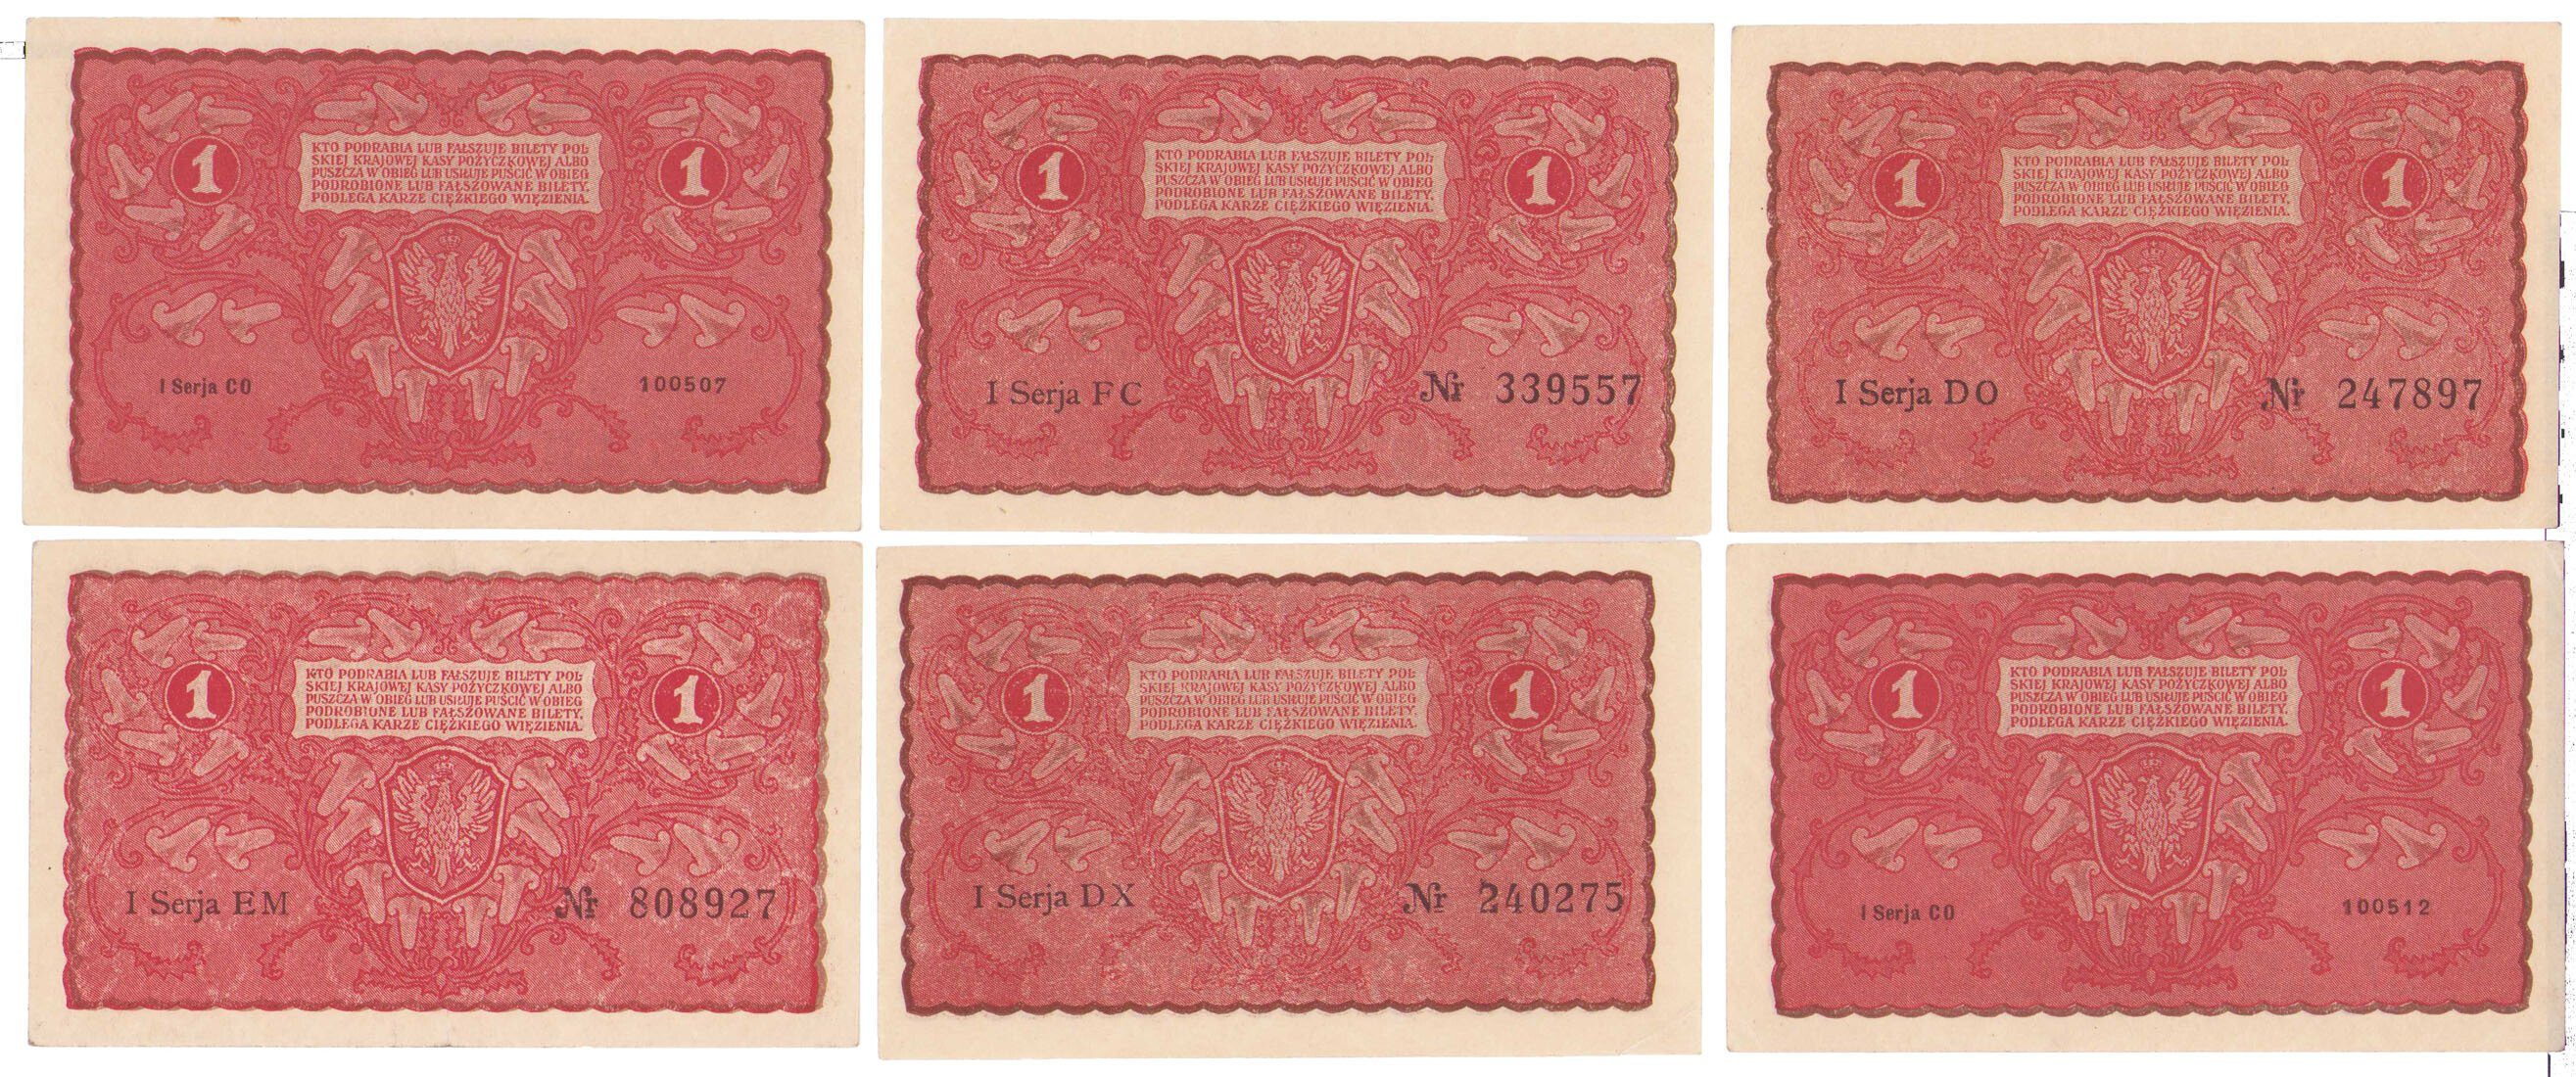 1 marka polska 1919 – zestaw 6 banknotów